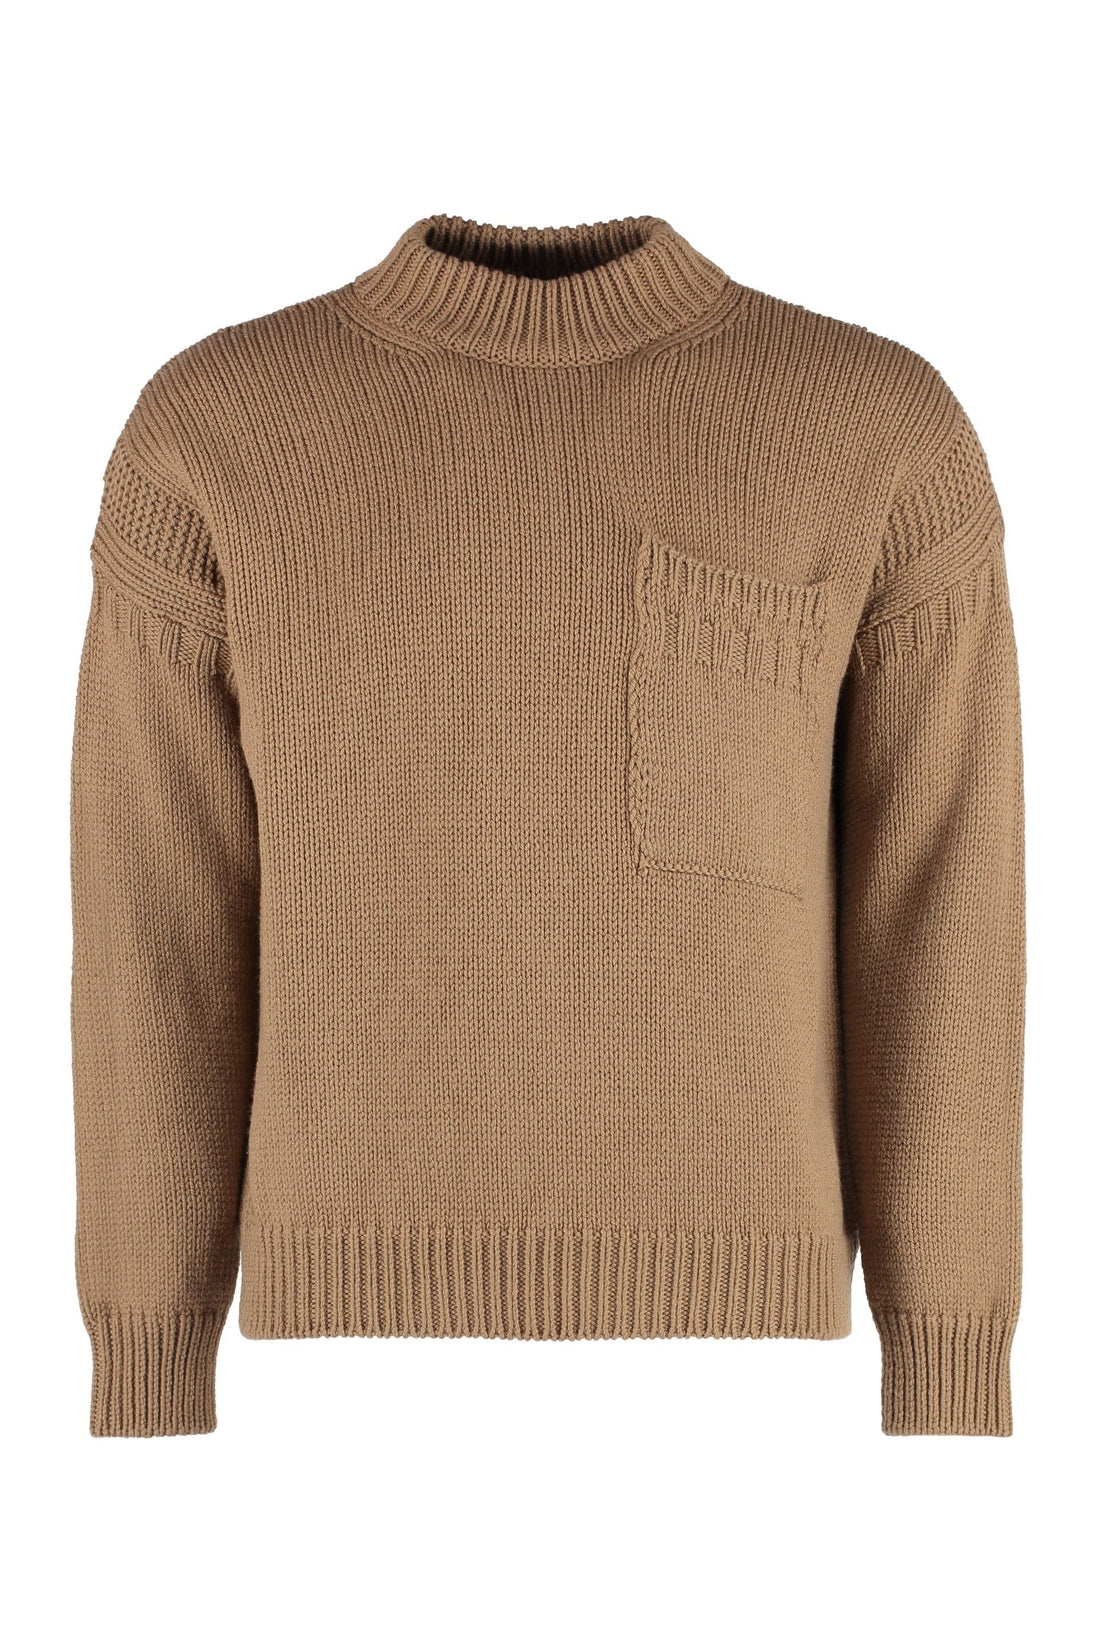 Шерстяной свитер с круглым вырезом Ten c, цвет beige